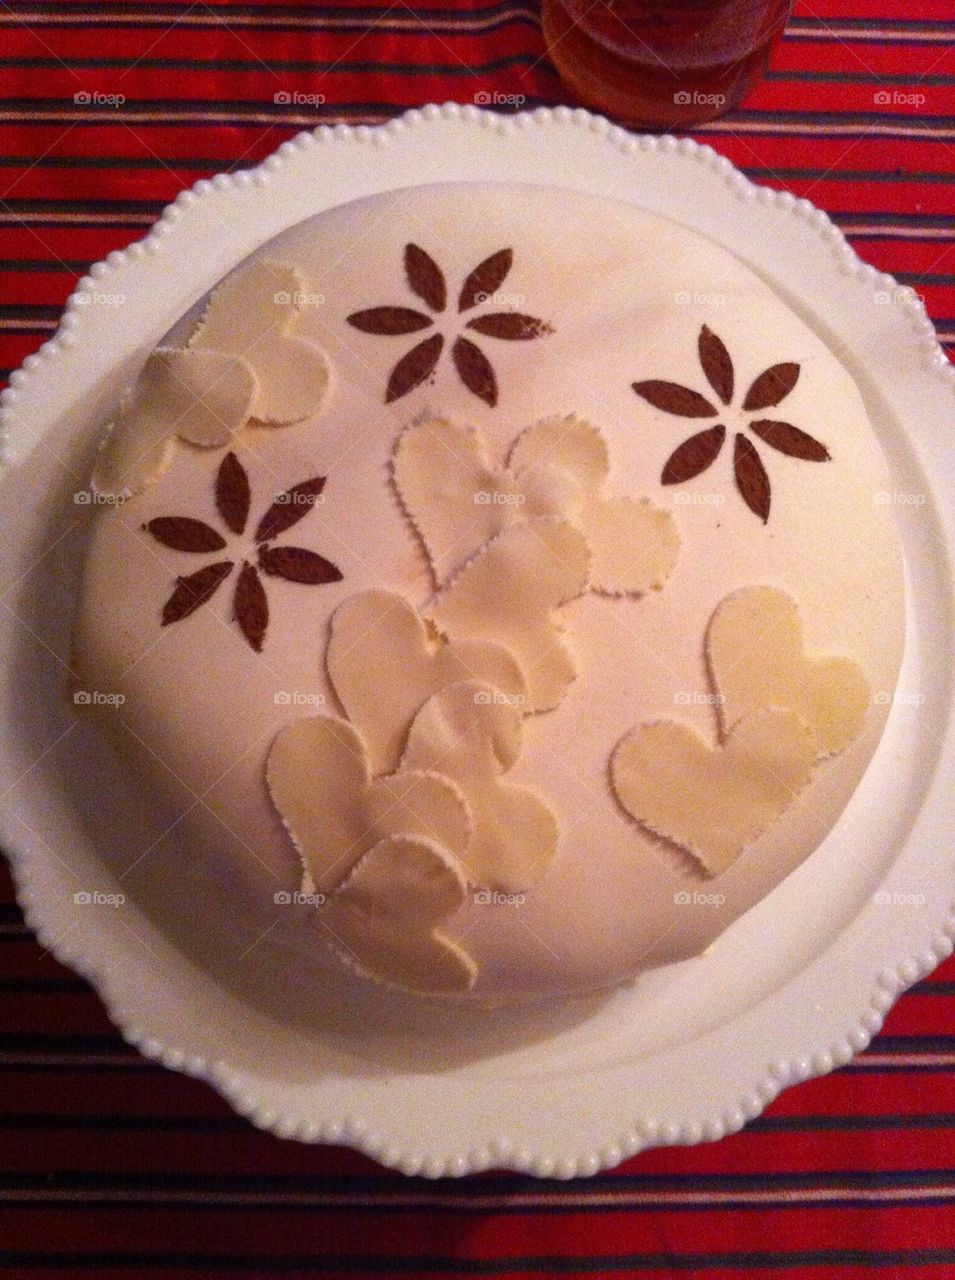 The birthday cake for Klara